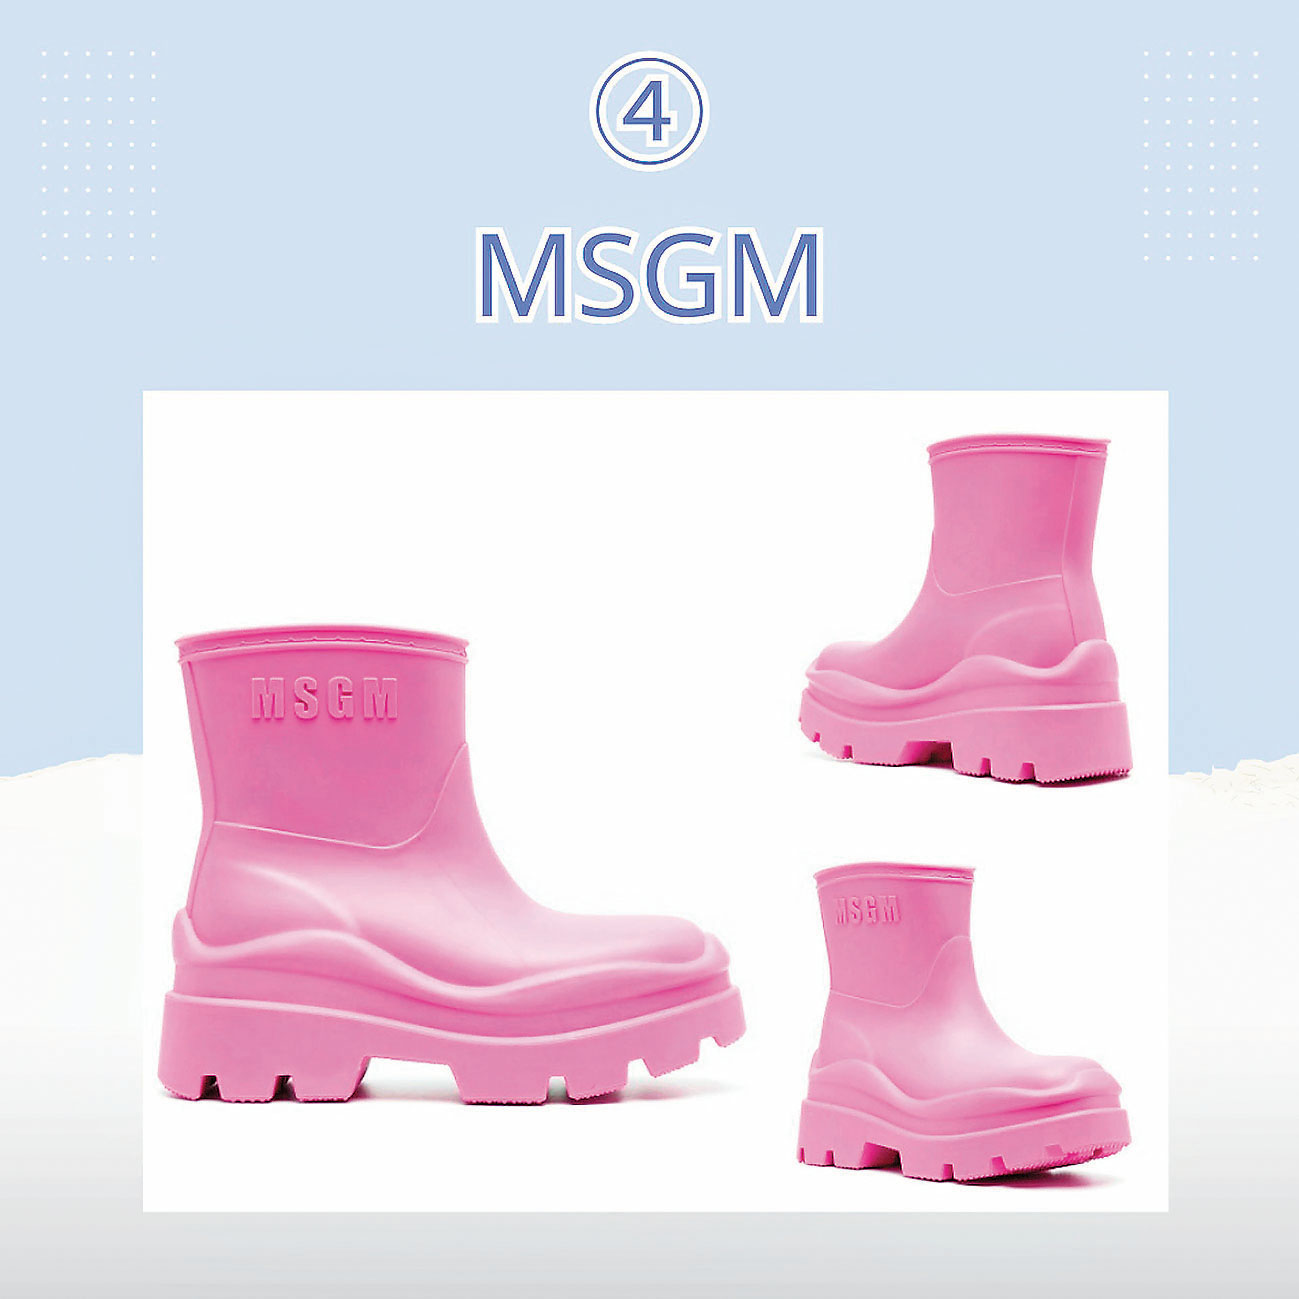 ■亮粉色雨靴活潑亮麗。